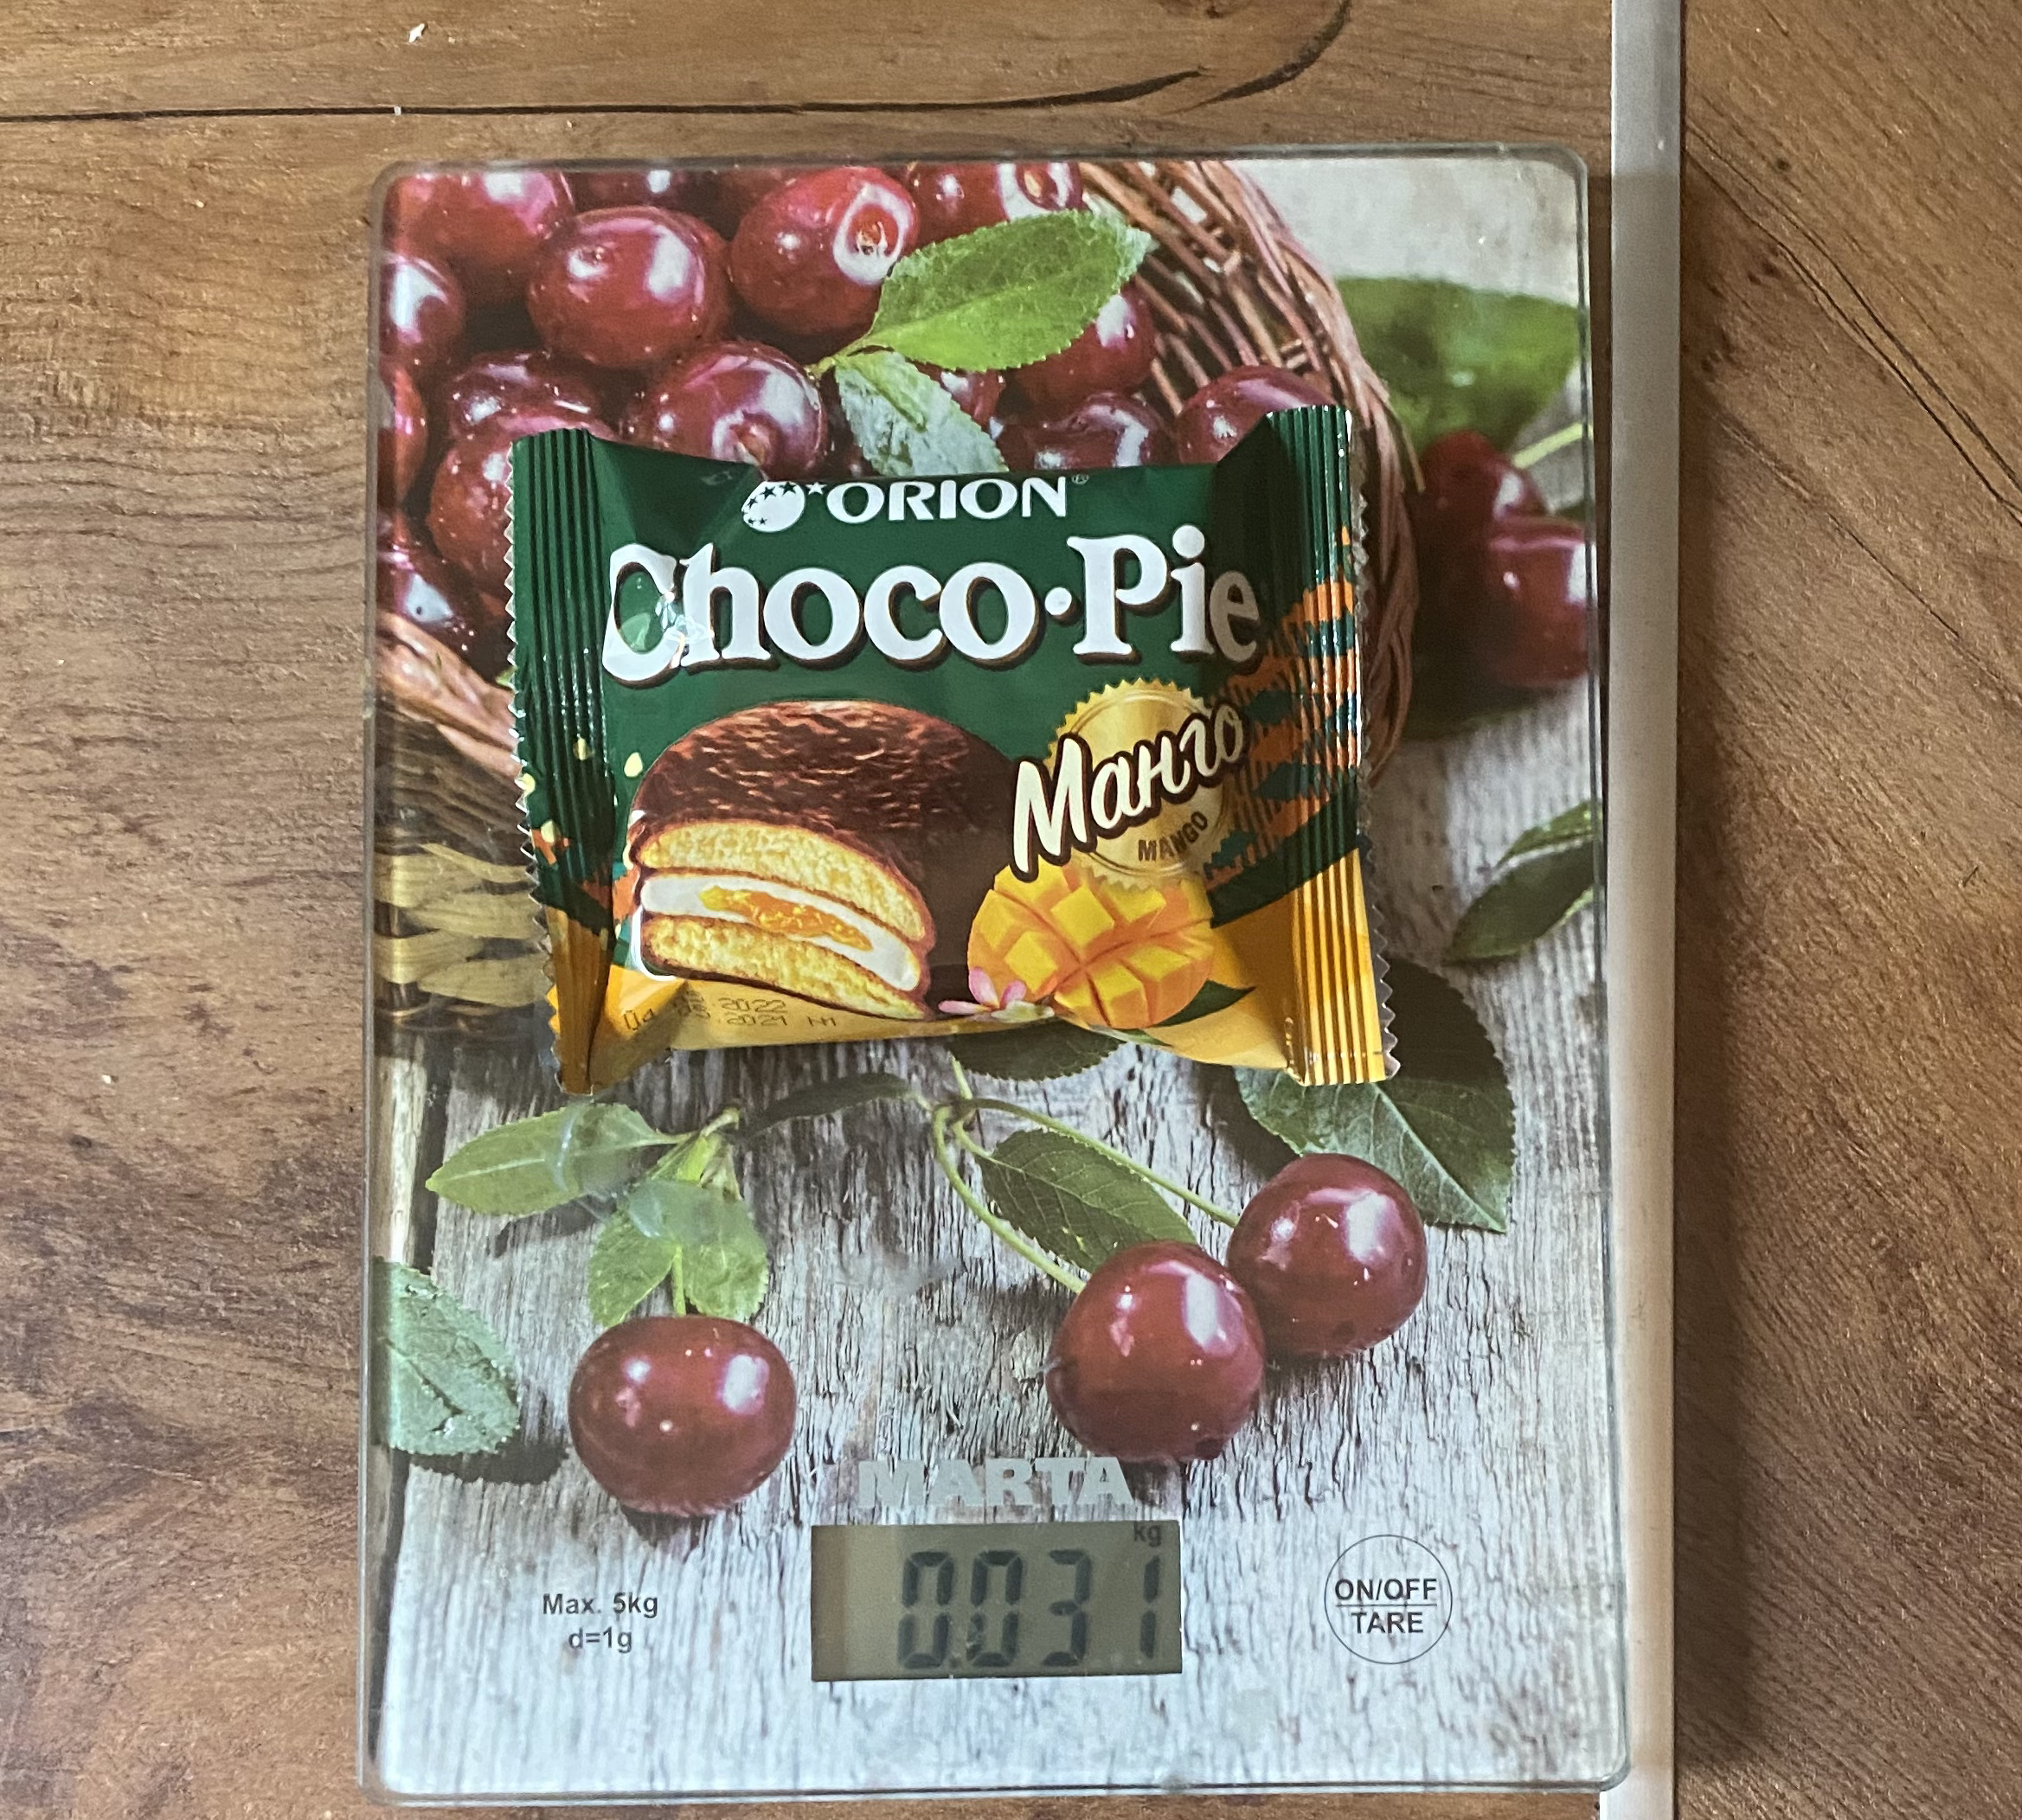 вес пирожного Чоко пай с манго 1 шт